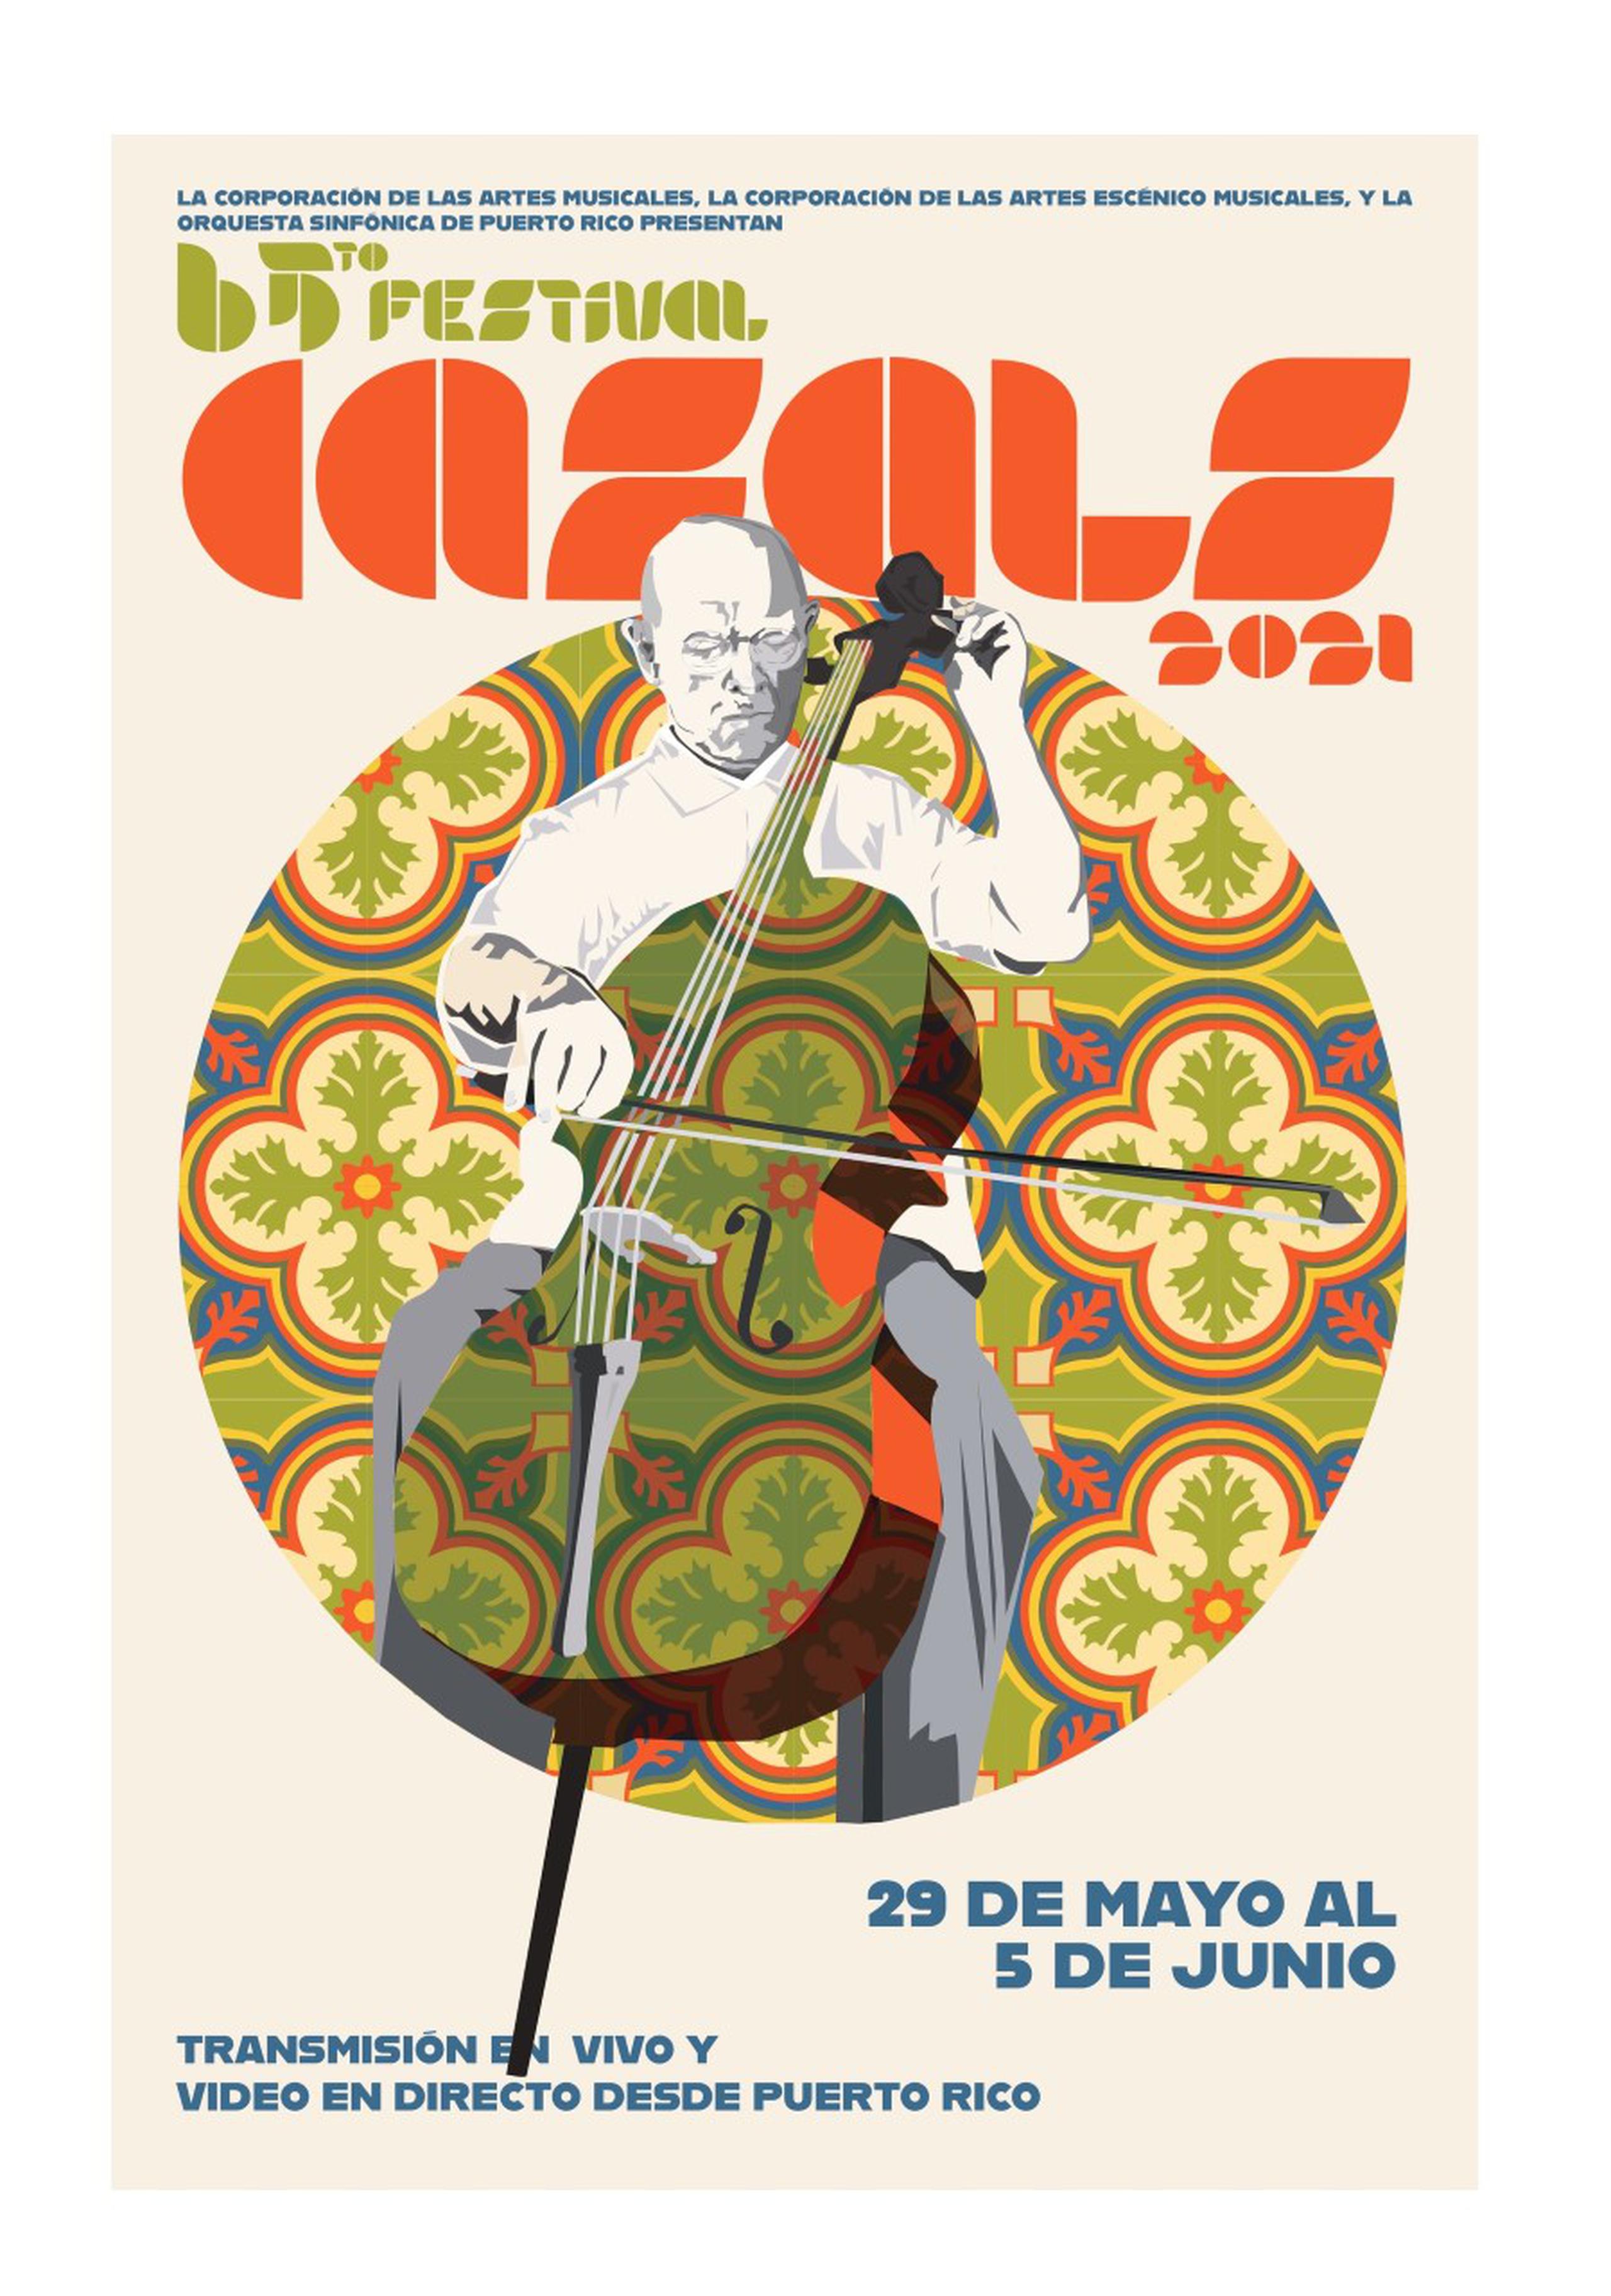 El artista Gustavo Castrodad es el creador del afiche de esta nueva edición del festival.